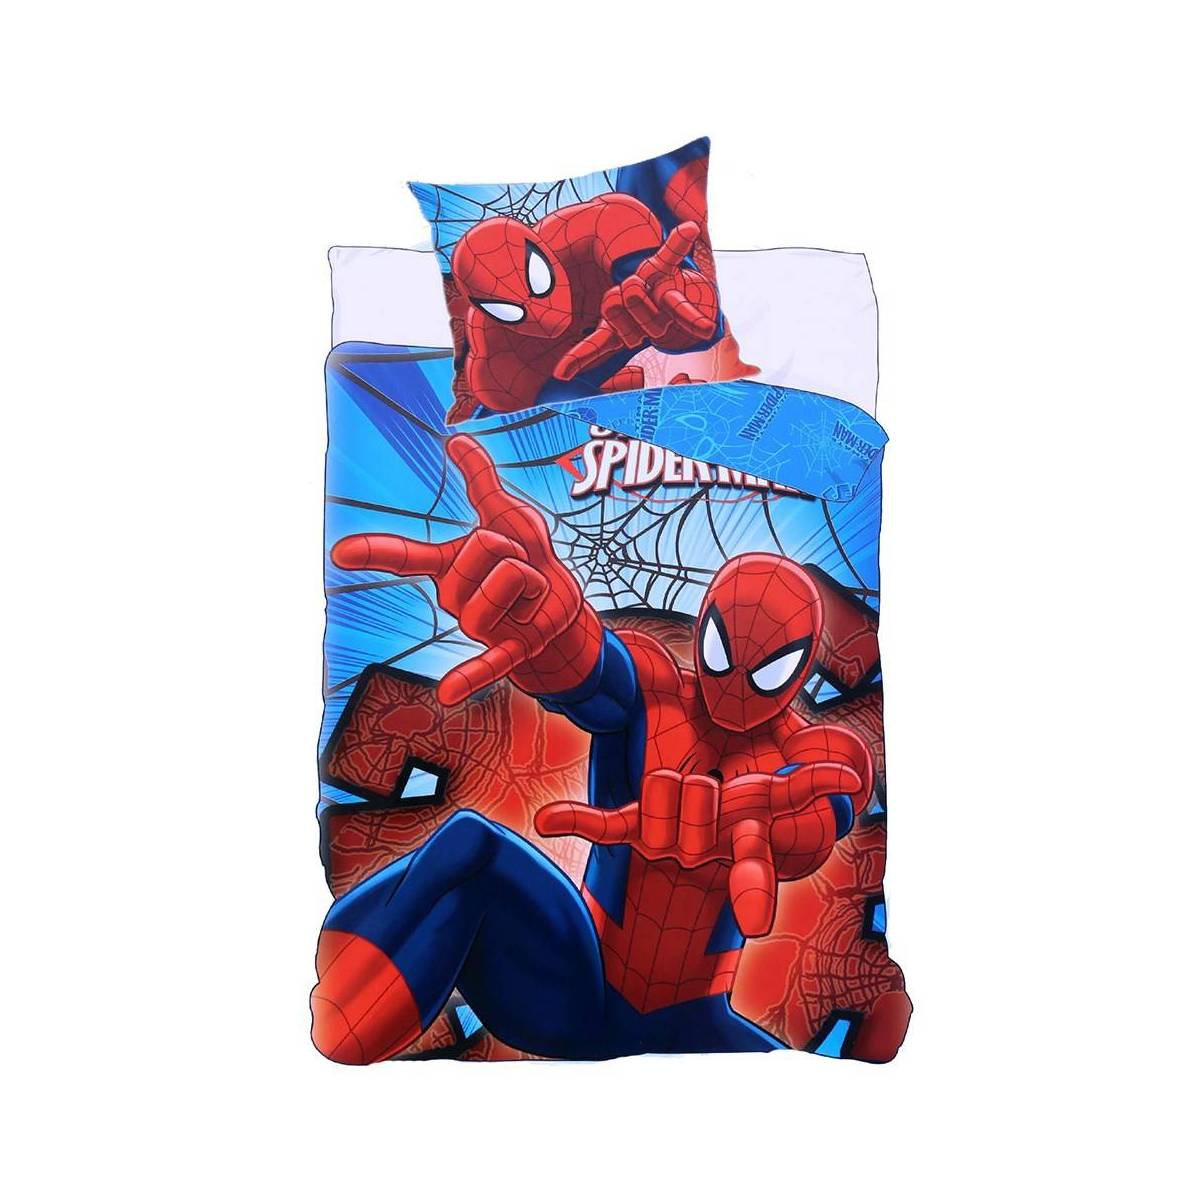 Spider-Man - Housse de couette enfant + Taie d'oreiller 155 x 200 cm